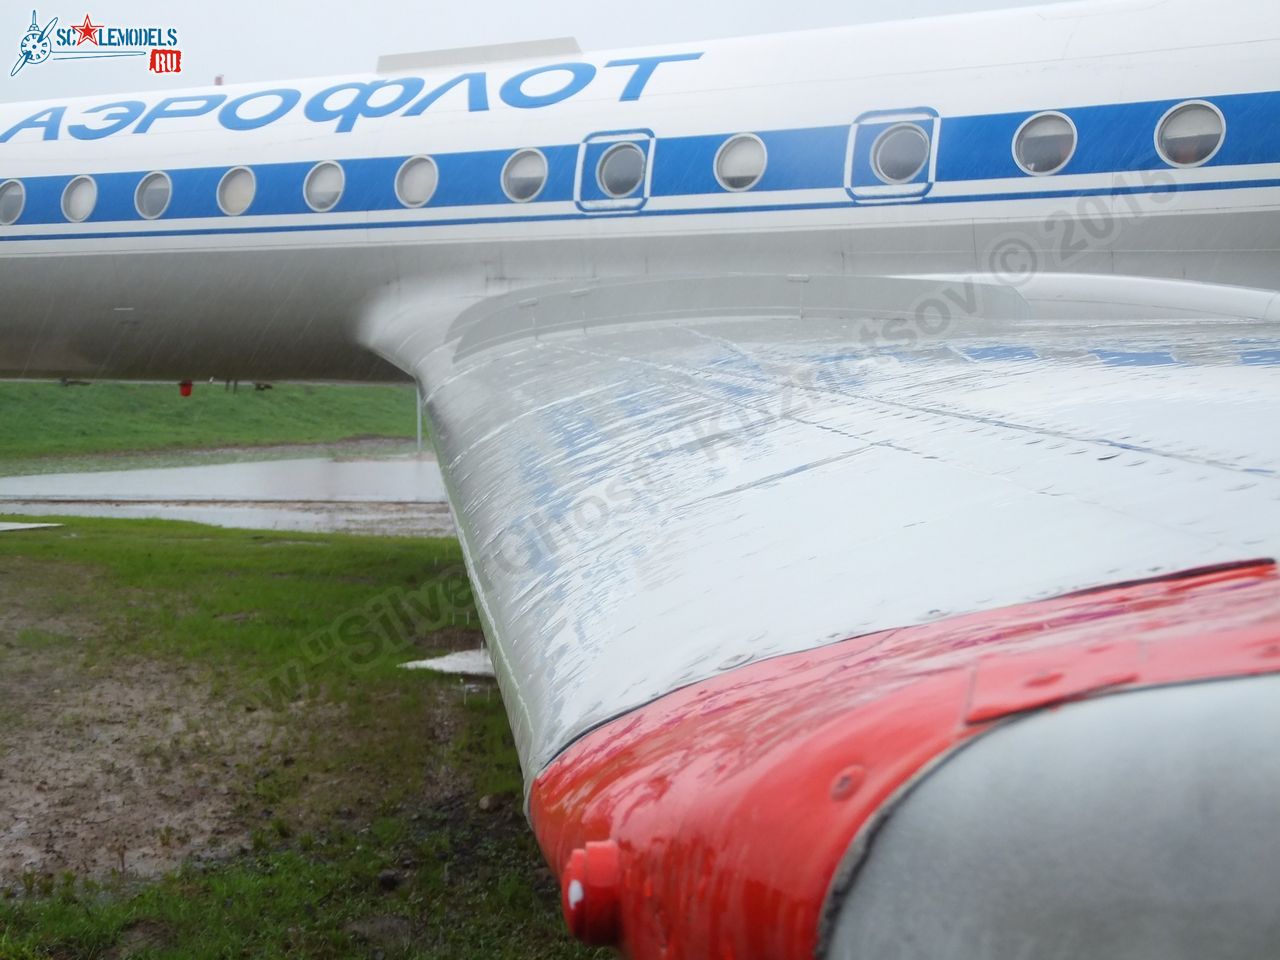 Tu-134A_USSR-65036_0005.jpg